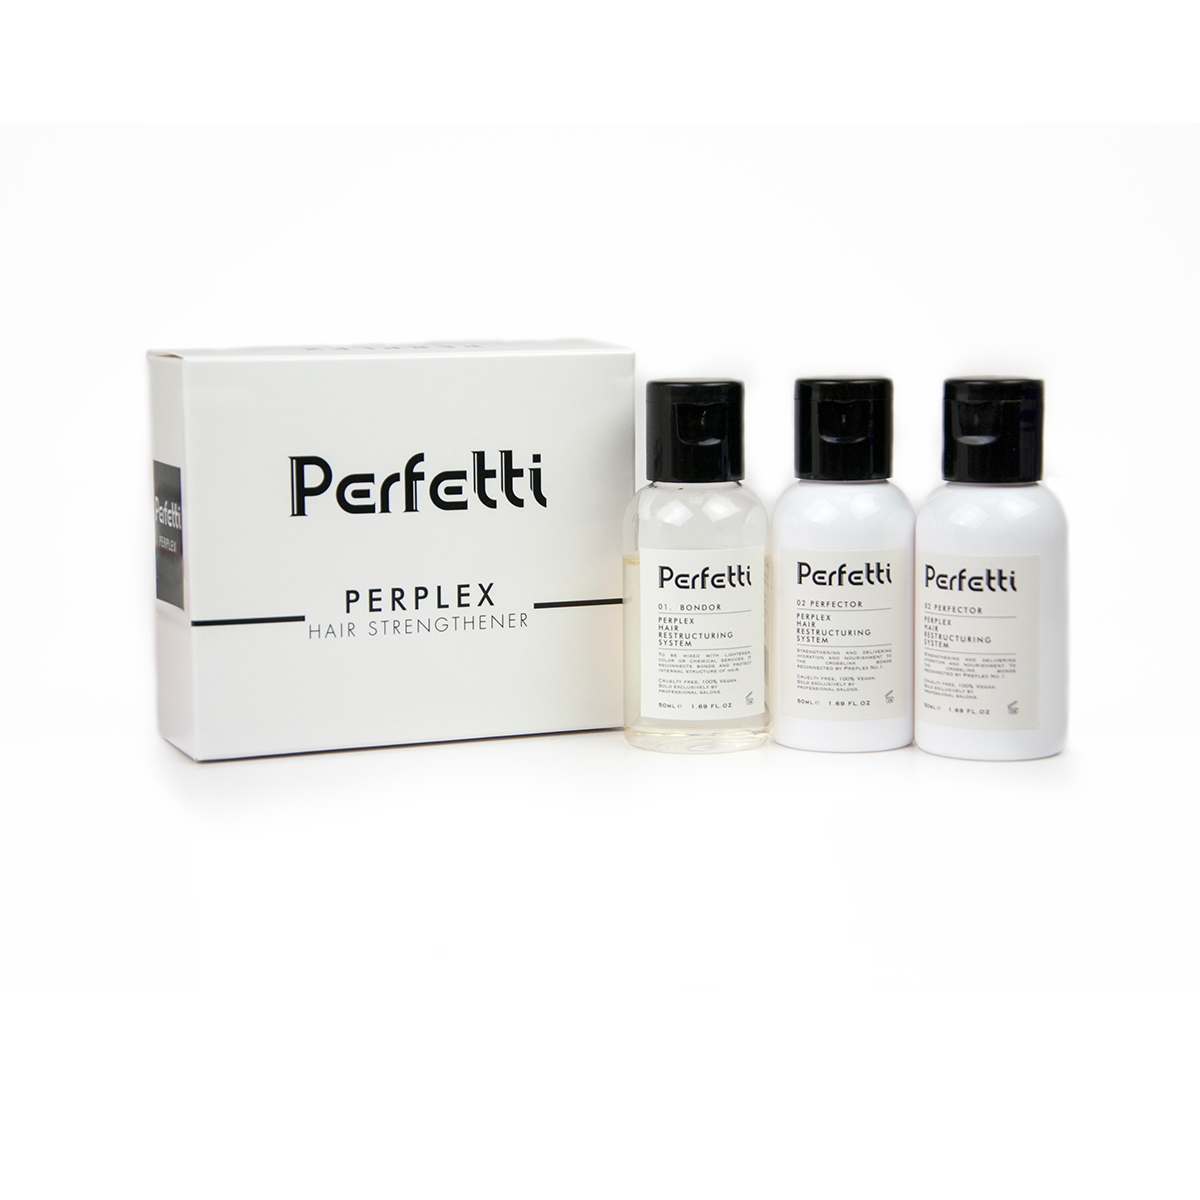 Perfetti Perplex Small Box Set - 50ml